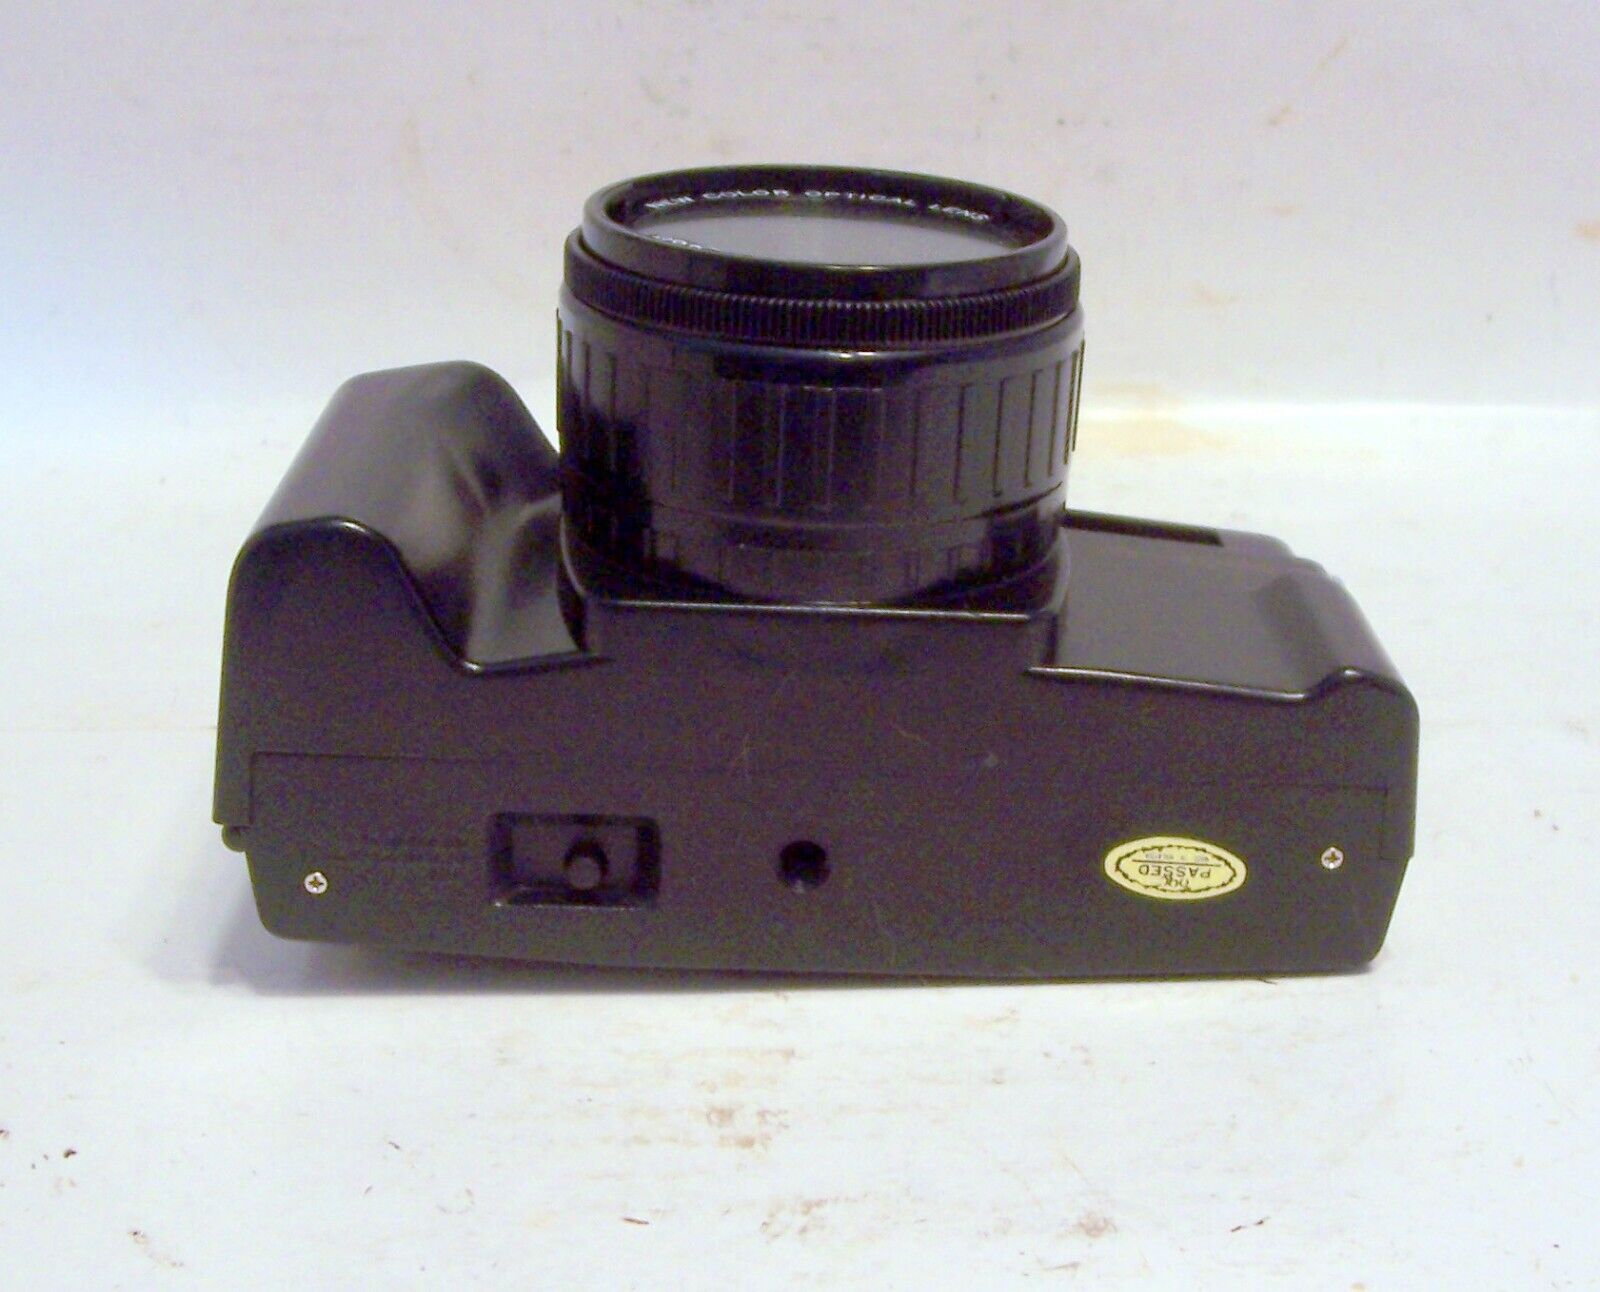 NEW Vintage Film 35mm Camera Nippon AR-4392F w/ Case, Strap, Sun Shade, Lens Cap Nippon ar 4392F - фотография #16